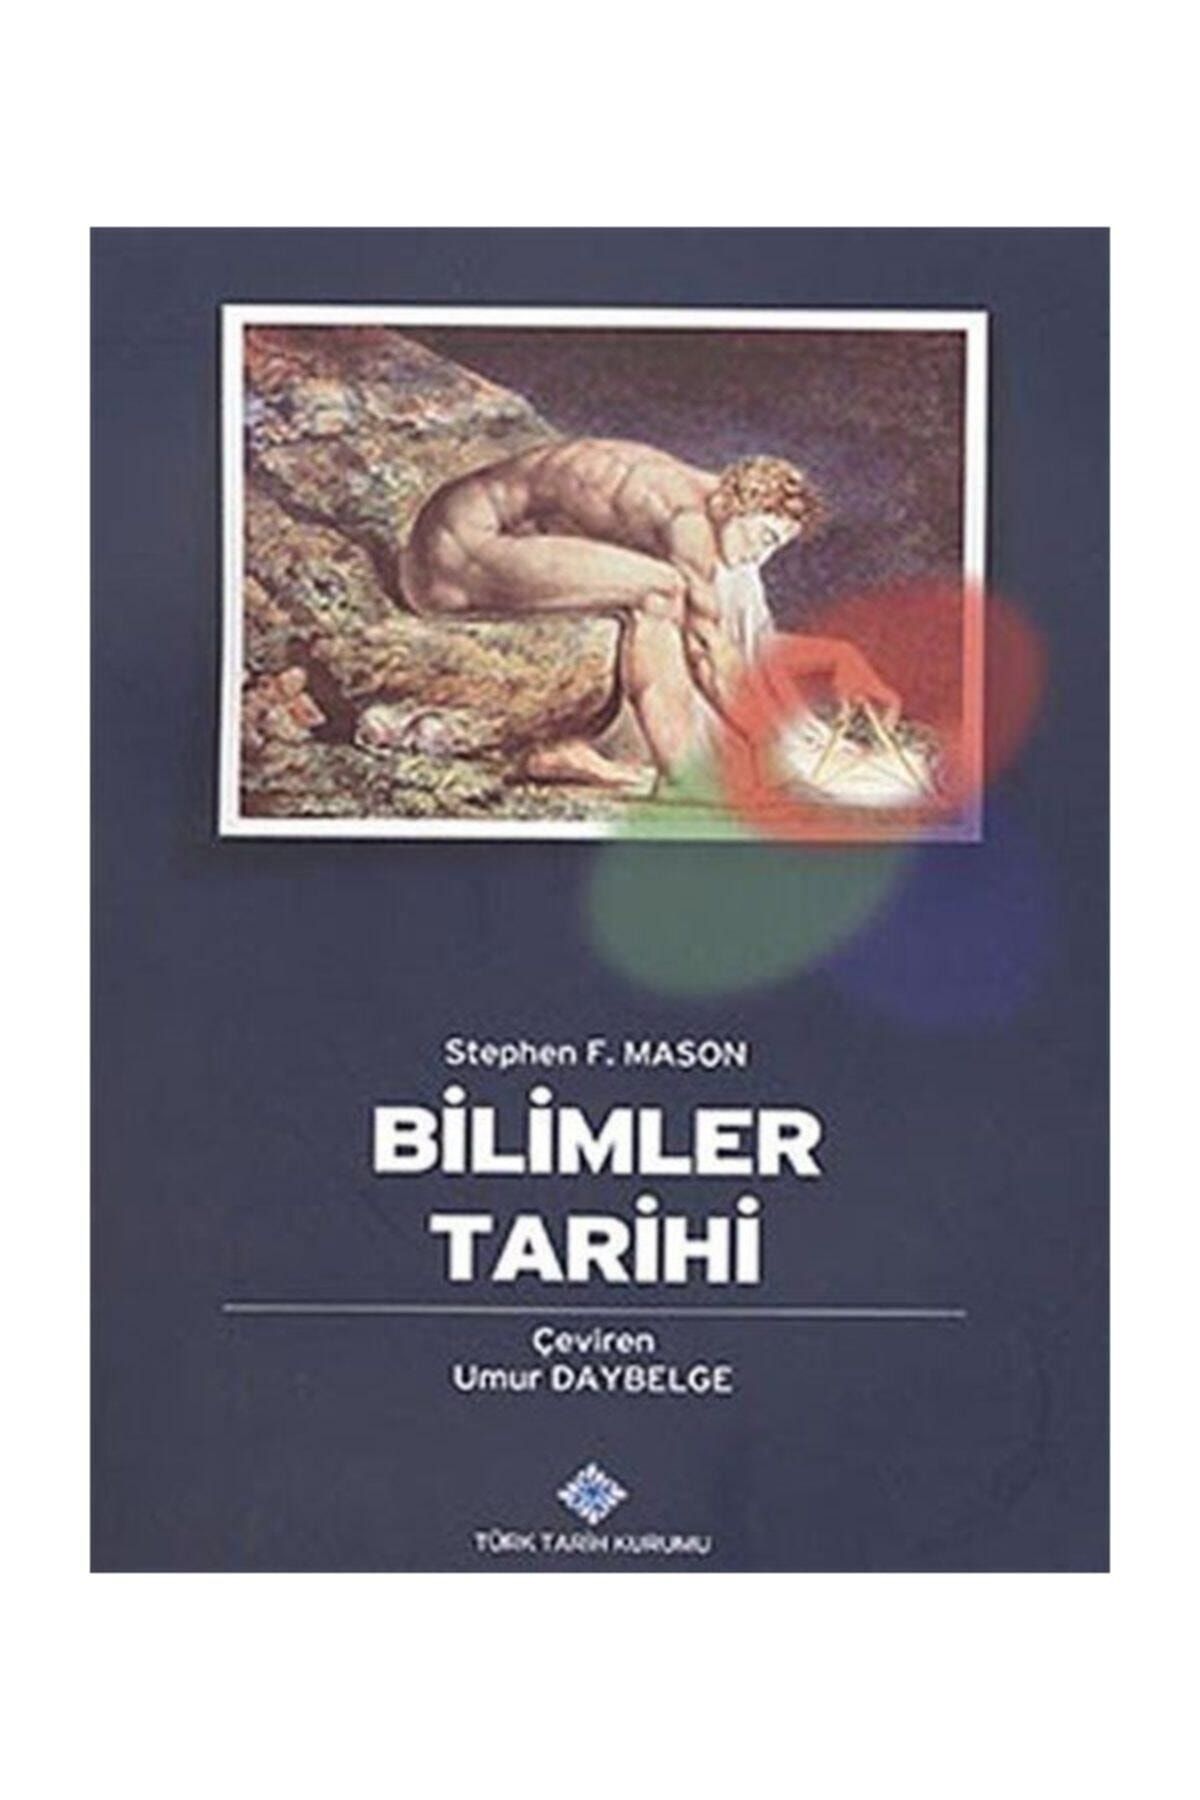 Türk Tarih Kurumu Yayınları Bilimler Tarihi (cittli)- Stephen F. Mason